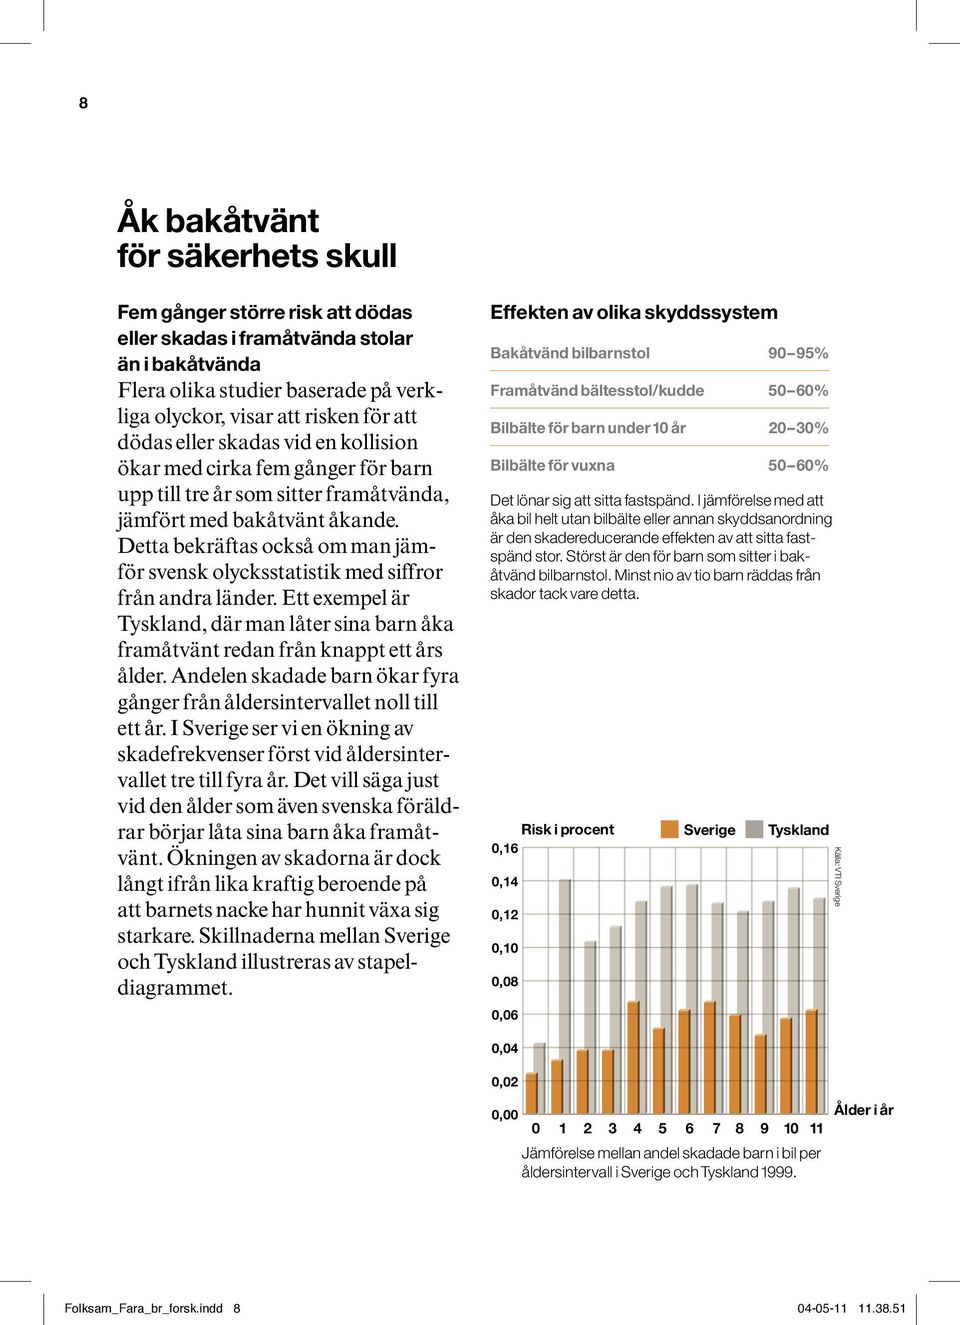 Detta bekräftas också om man jämför svensk olycksstatistik med siffror från andra länder. Ett exempel är Tyskland, där man låter sina barn åka framåtvänt redan från knappt ett års ålder.